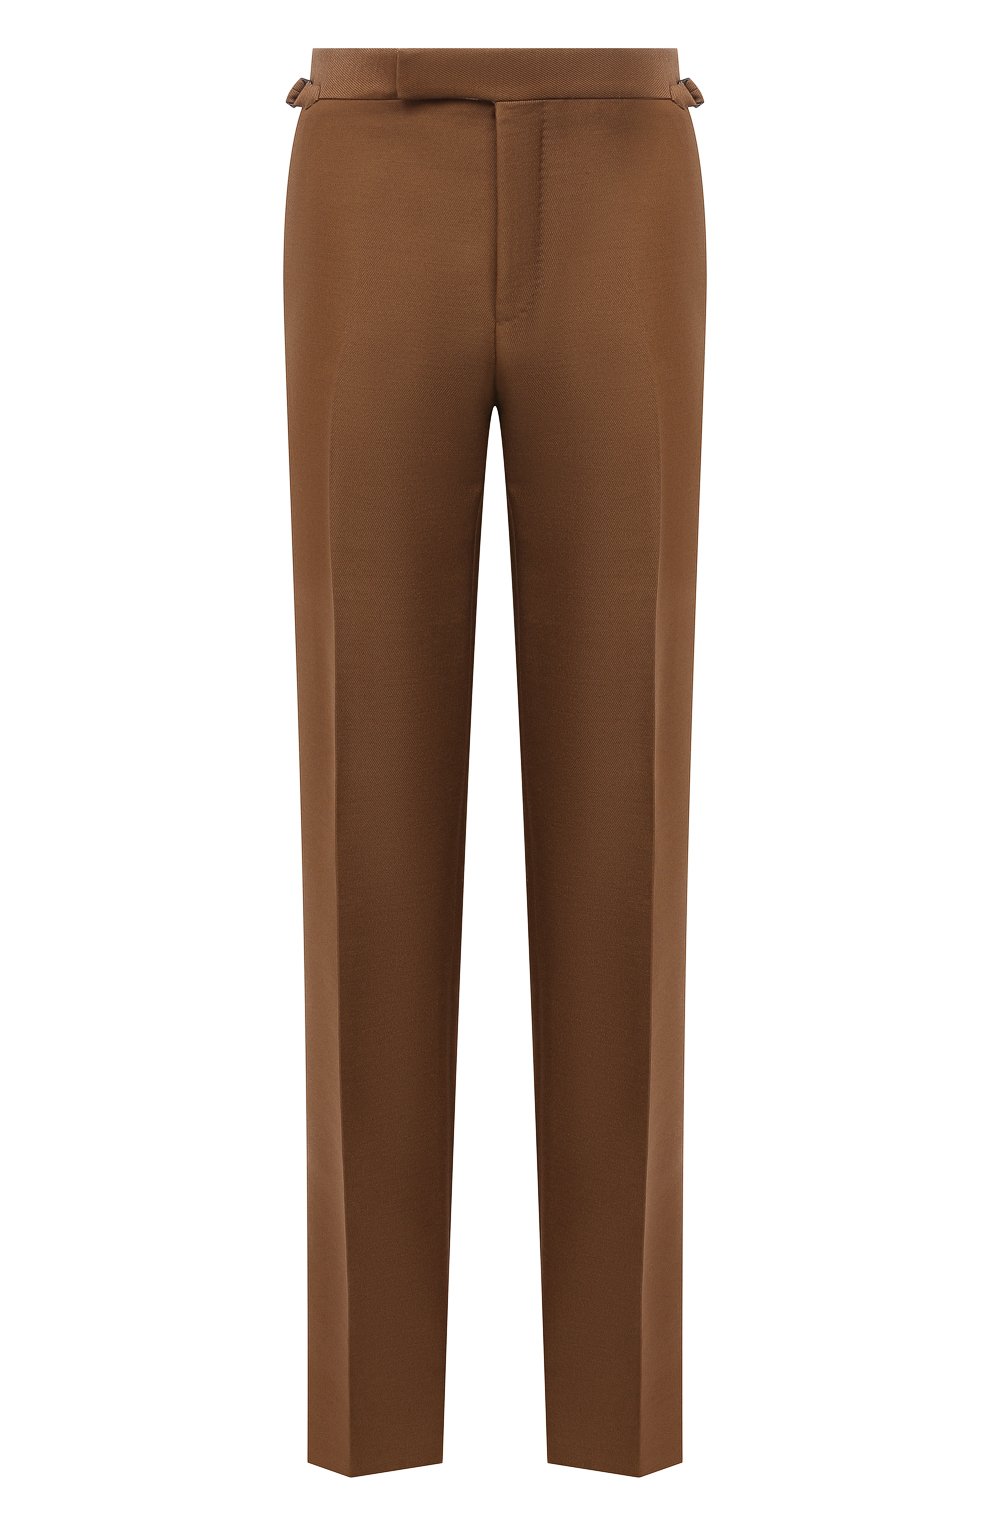 Мужские брюки из шерсти и вискозы TOM FORD коричневого цвета, арт. 244R24/610043 | Фото 1 (Материал внешний: Шерсть, Вискоза; Длина (брюки, джинсы): Стандартные; Случай: Повседневный; Стили: Кэжуэл)